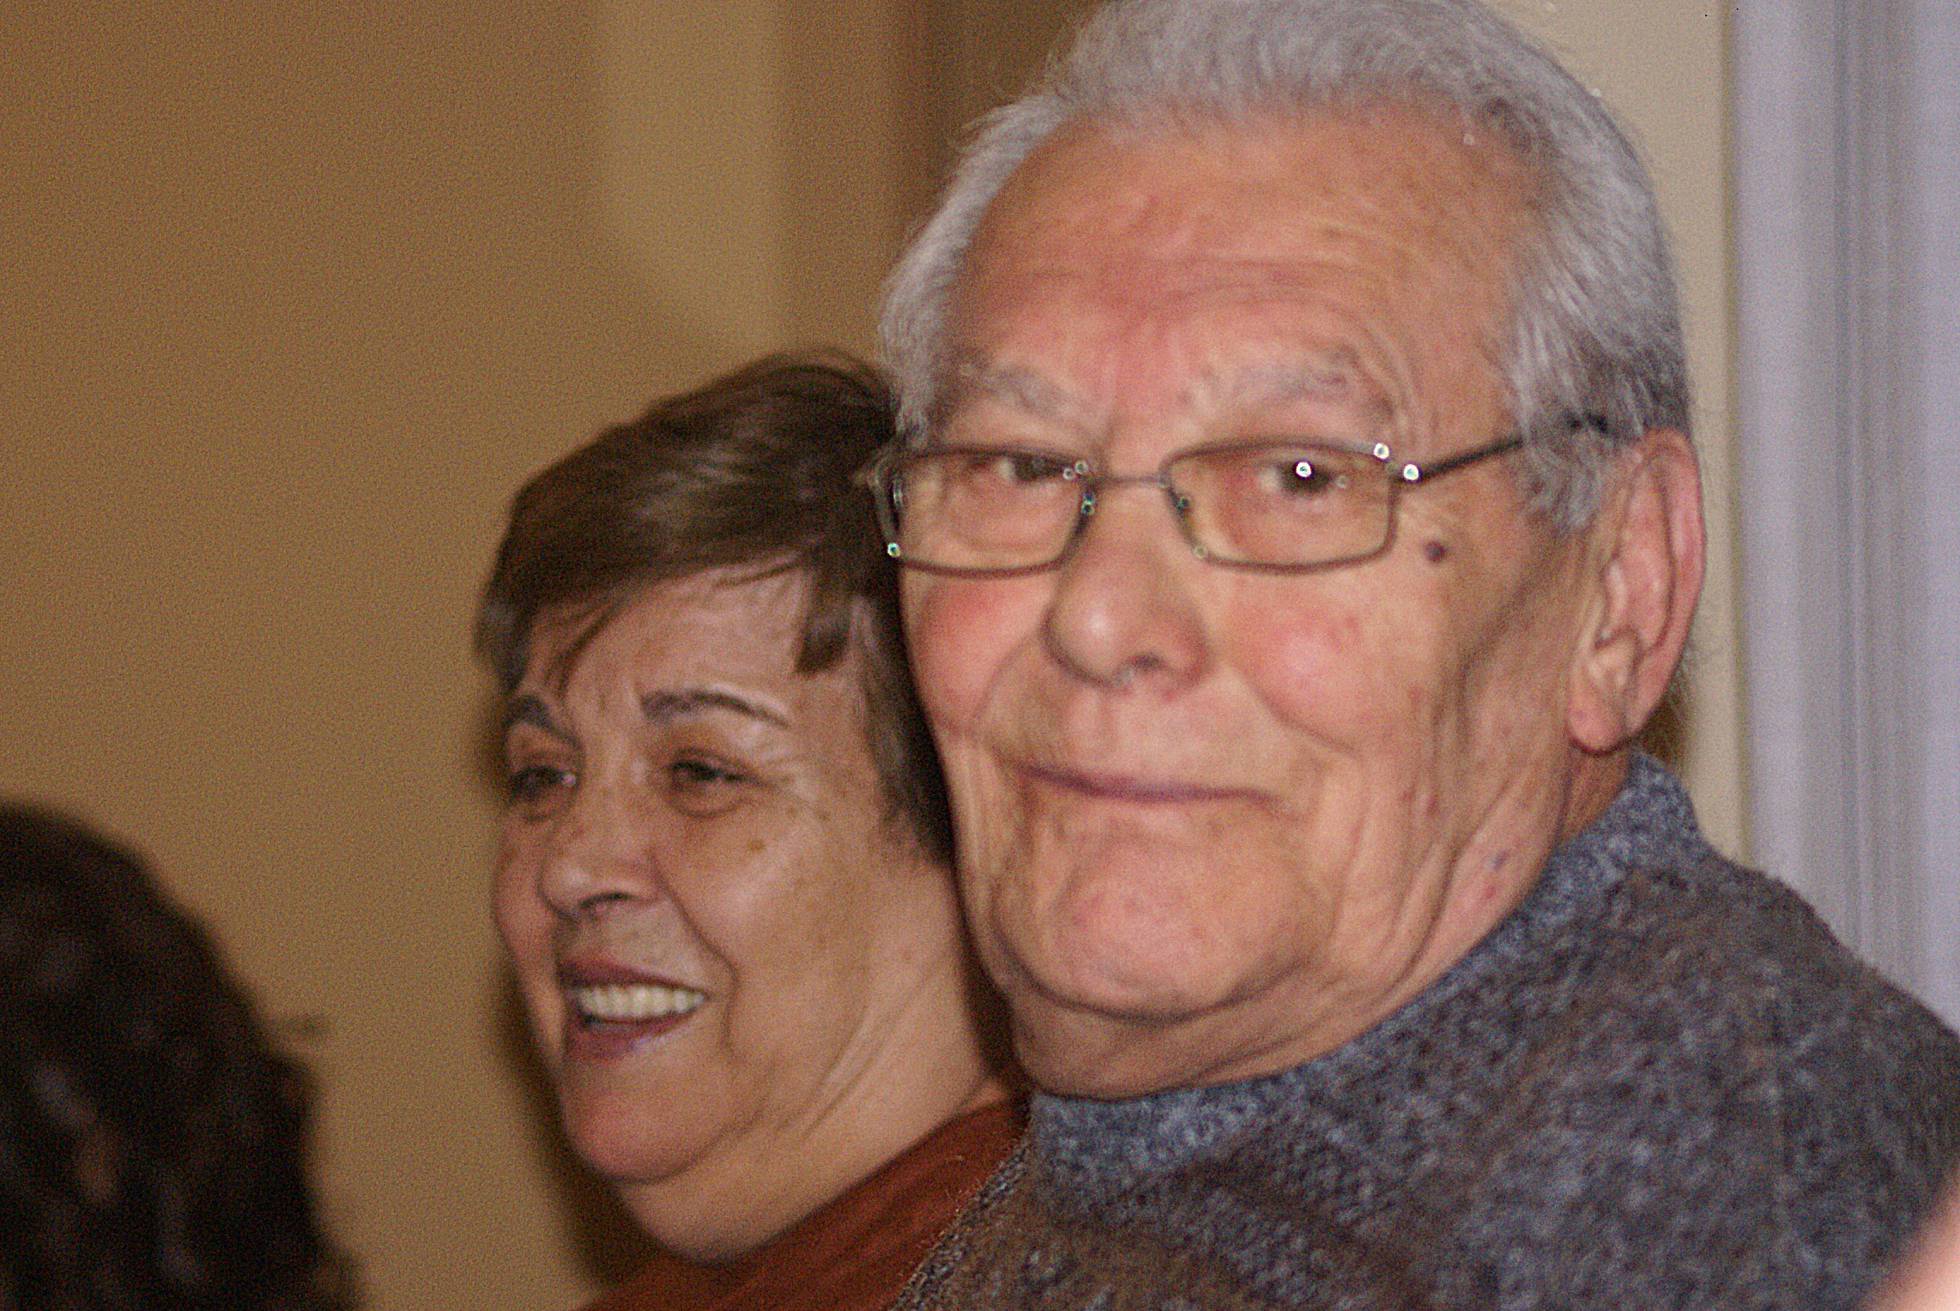 El Hospital Fremap Majadahonda salva la vida de Casimiro Coello (82 años): Covid 19 con enfermedad pulmonar crónica